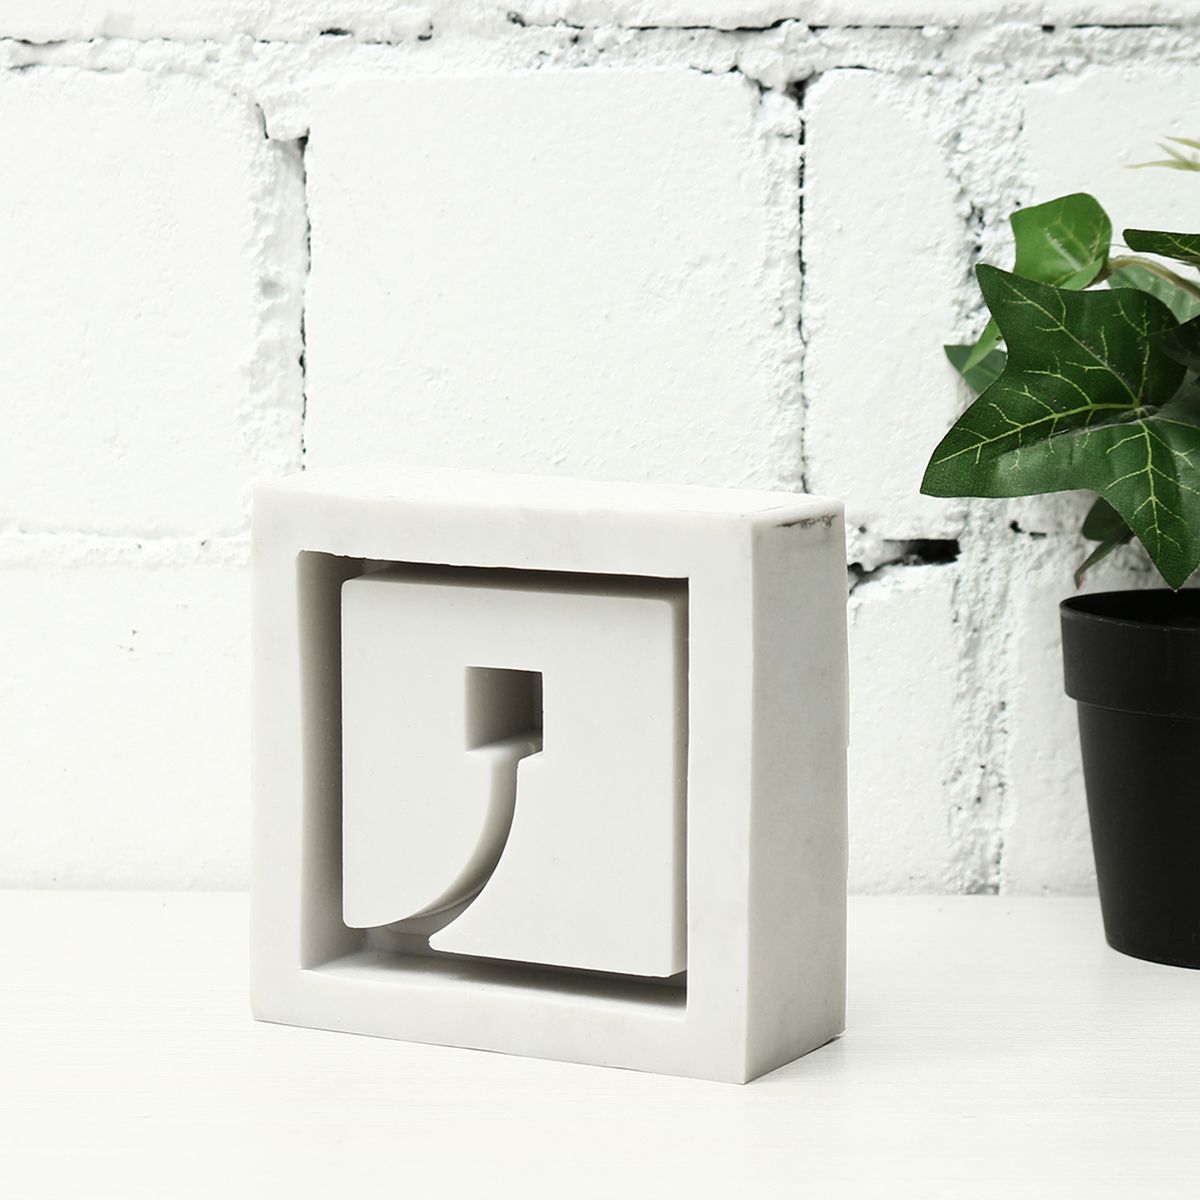 Silicone-Concrete-Flower-Pot-Mold-3D-Handmade-DIY-Succulent-Planter-Candle-Soap-Cement-Mould-Decor-1354482